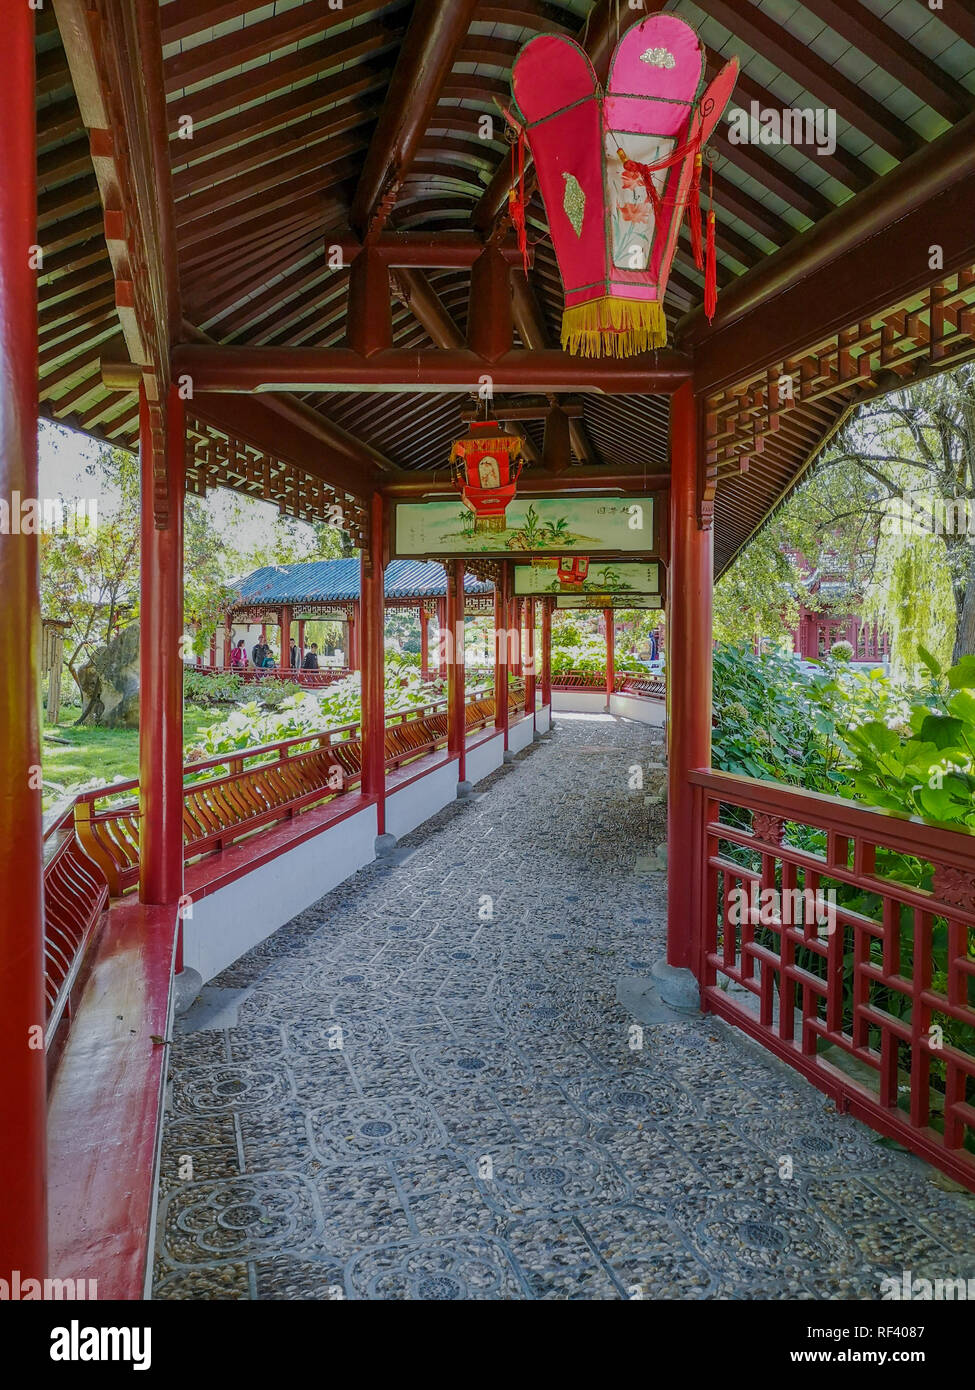 Settembre 2018 - Hainaut, Belgio: Cinese tradizionale corridoio di legno in rosso vivo con lanterne in il giardino cinese nel giardino zoologico Pairi Daiza Foto Stock